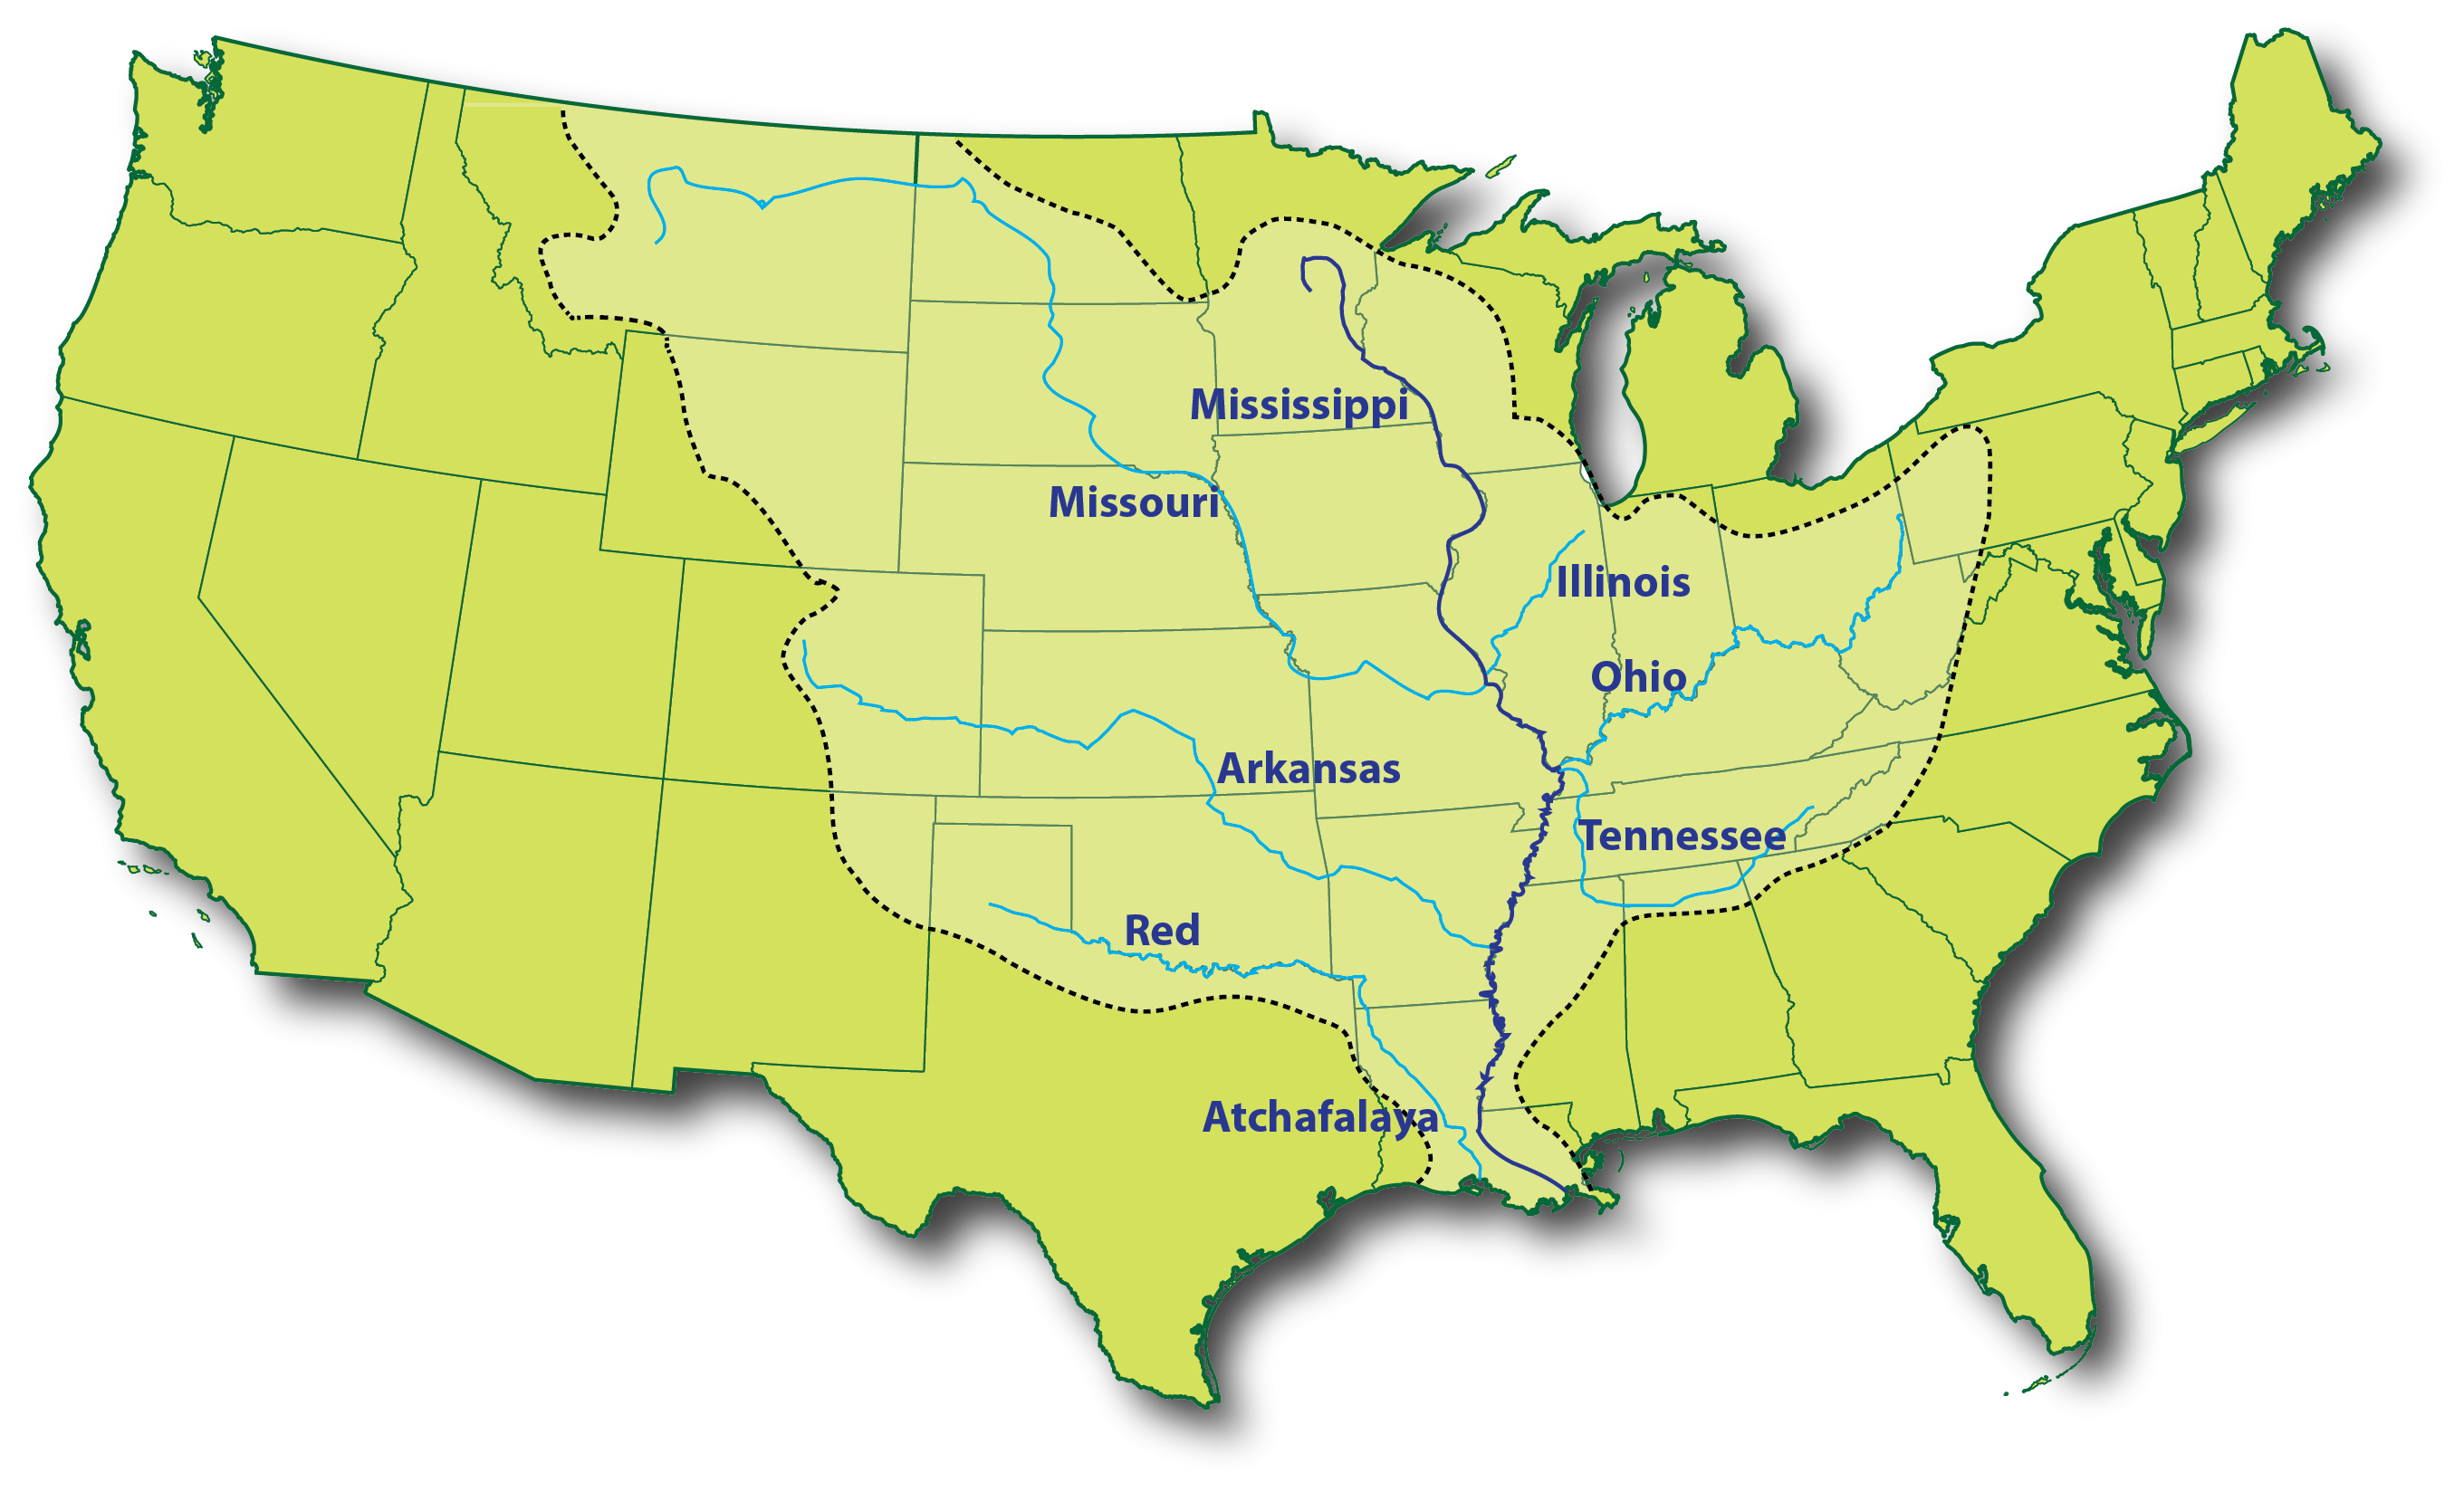 Притоки реки миссури. Реки Миссисипи и Миссури на карте Америки. Река Миссисипи на карте США. Река Миссисипи и Миссури на карте.